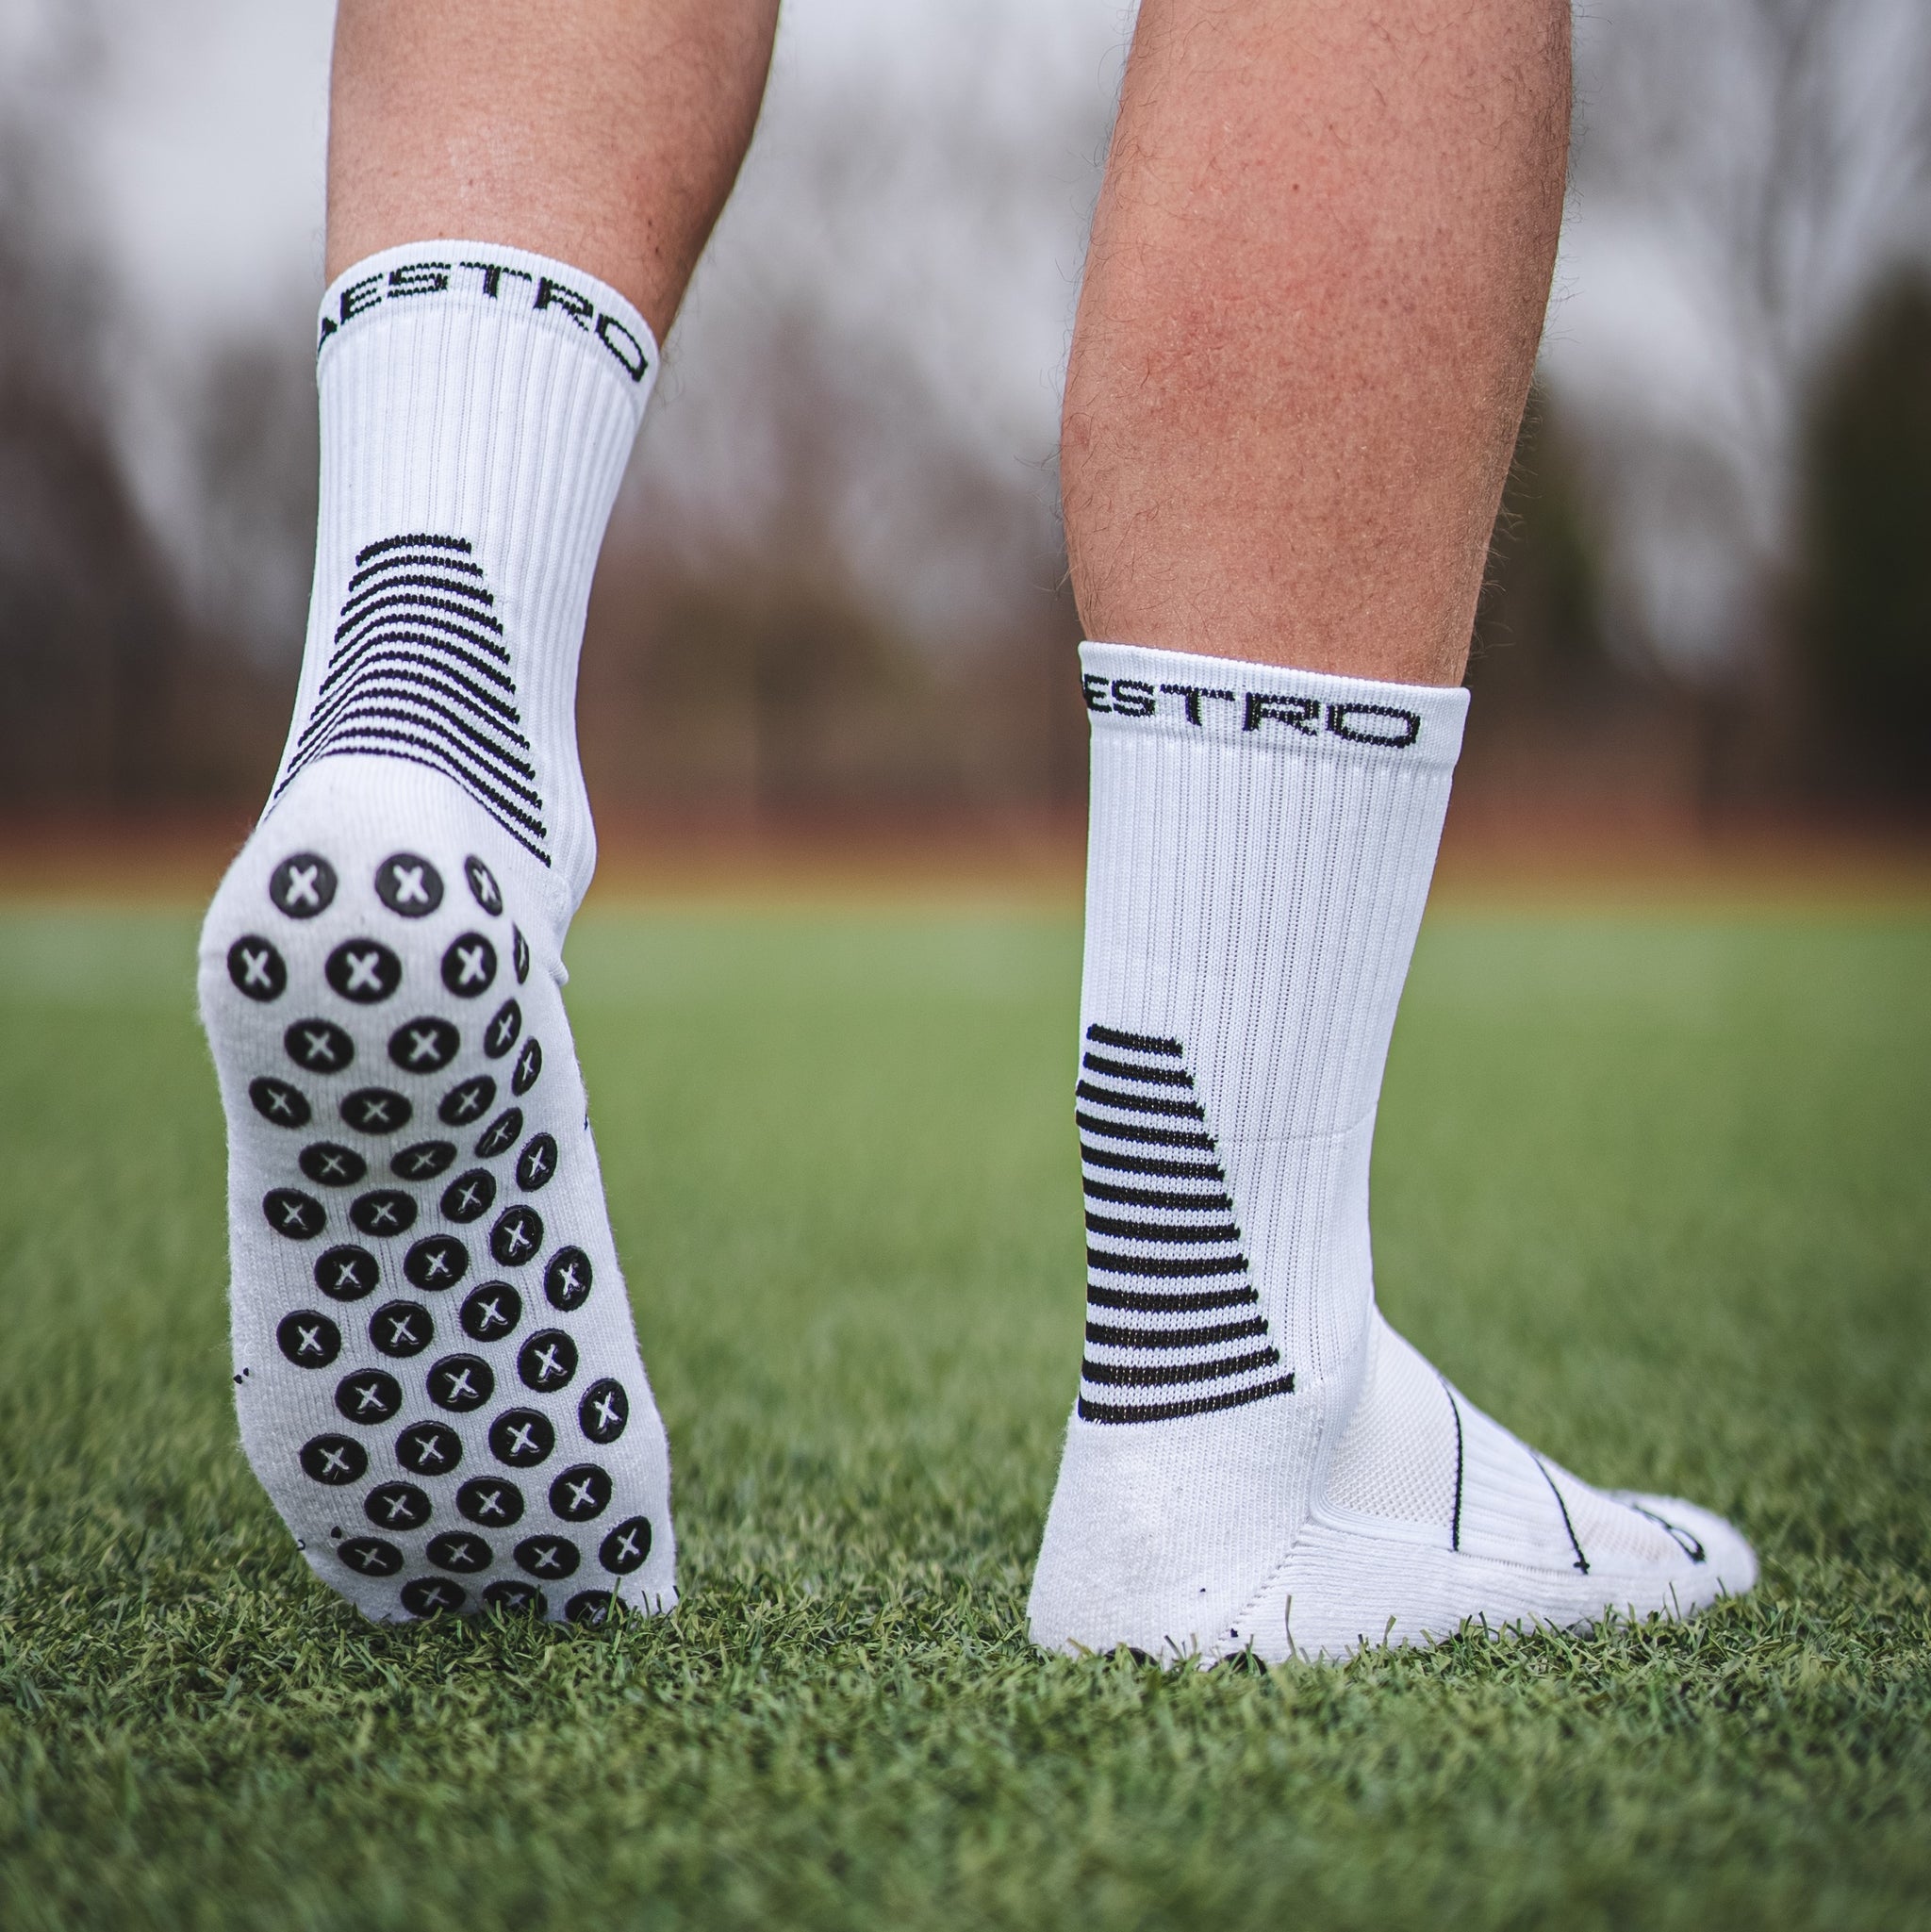 Grip socks- White – Encore sportswear